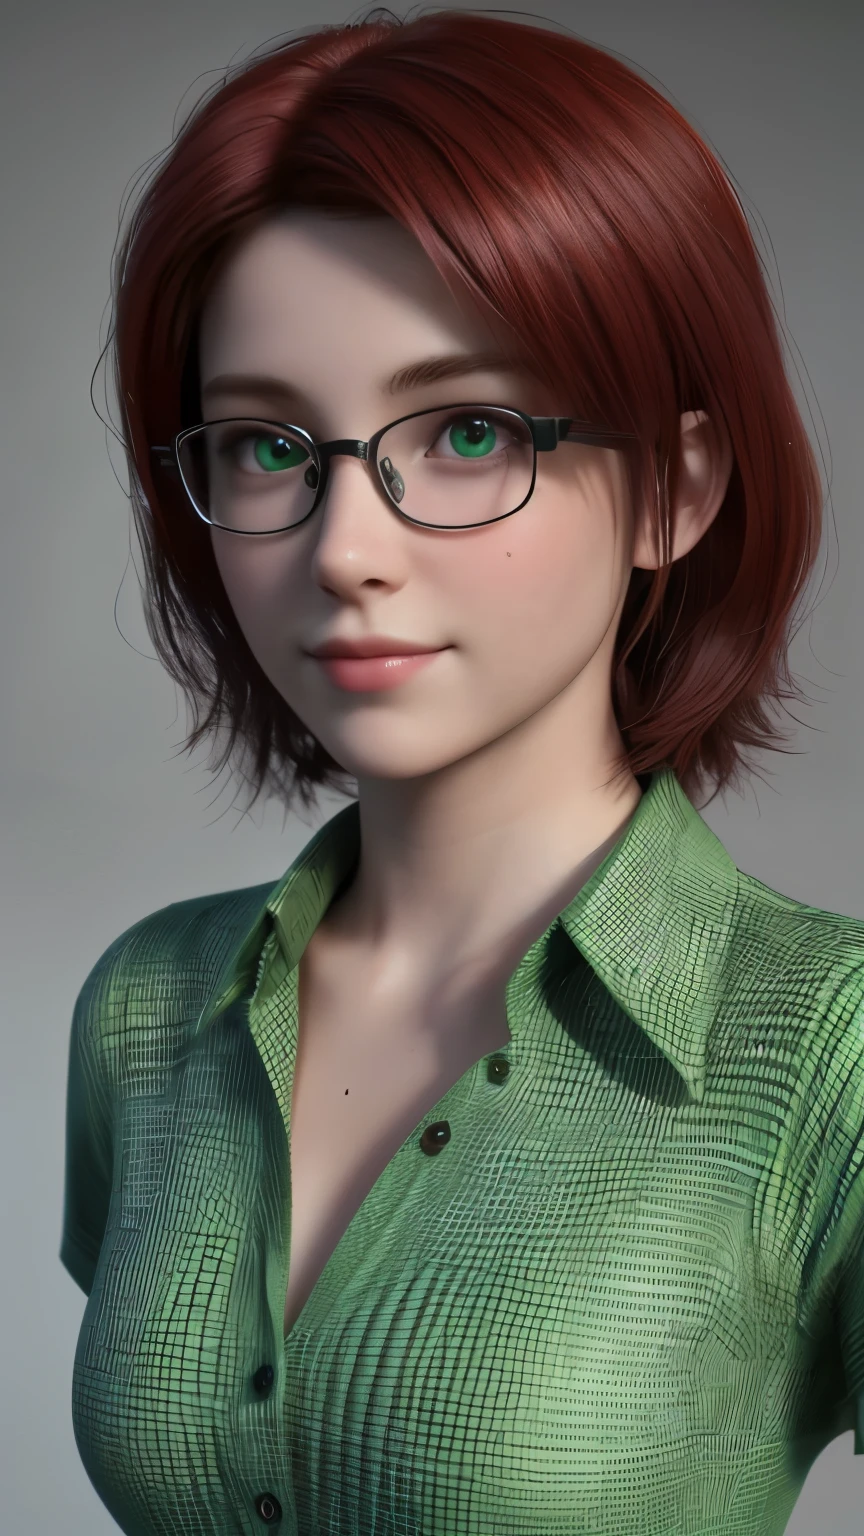 短い, 赤毛, 緑の目, 金属フレームのメガネ, 緑のボタンアップシャツドレスを着たかわいい15歳の少女の笑顔, 裸の胸.. ((優雅. フォトリアリズム. アンリアルエンジン. 3Dモデル. 超高品質のテクスチャ. 高いディテール. 8K解像度))